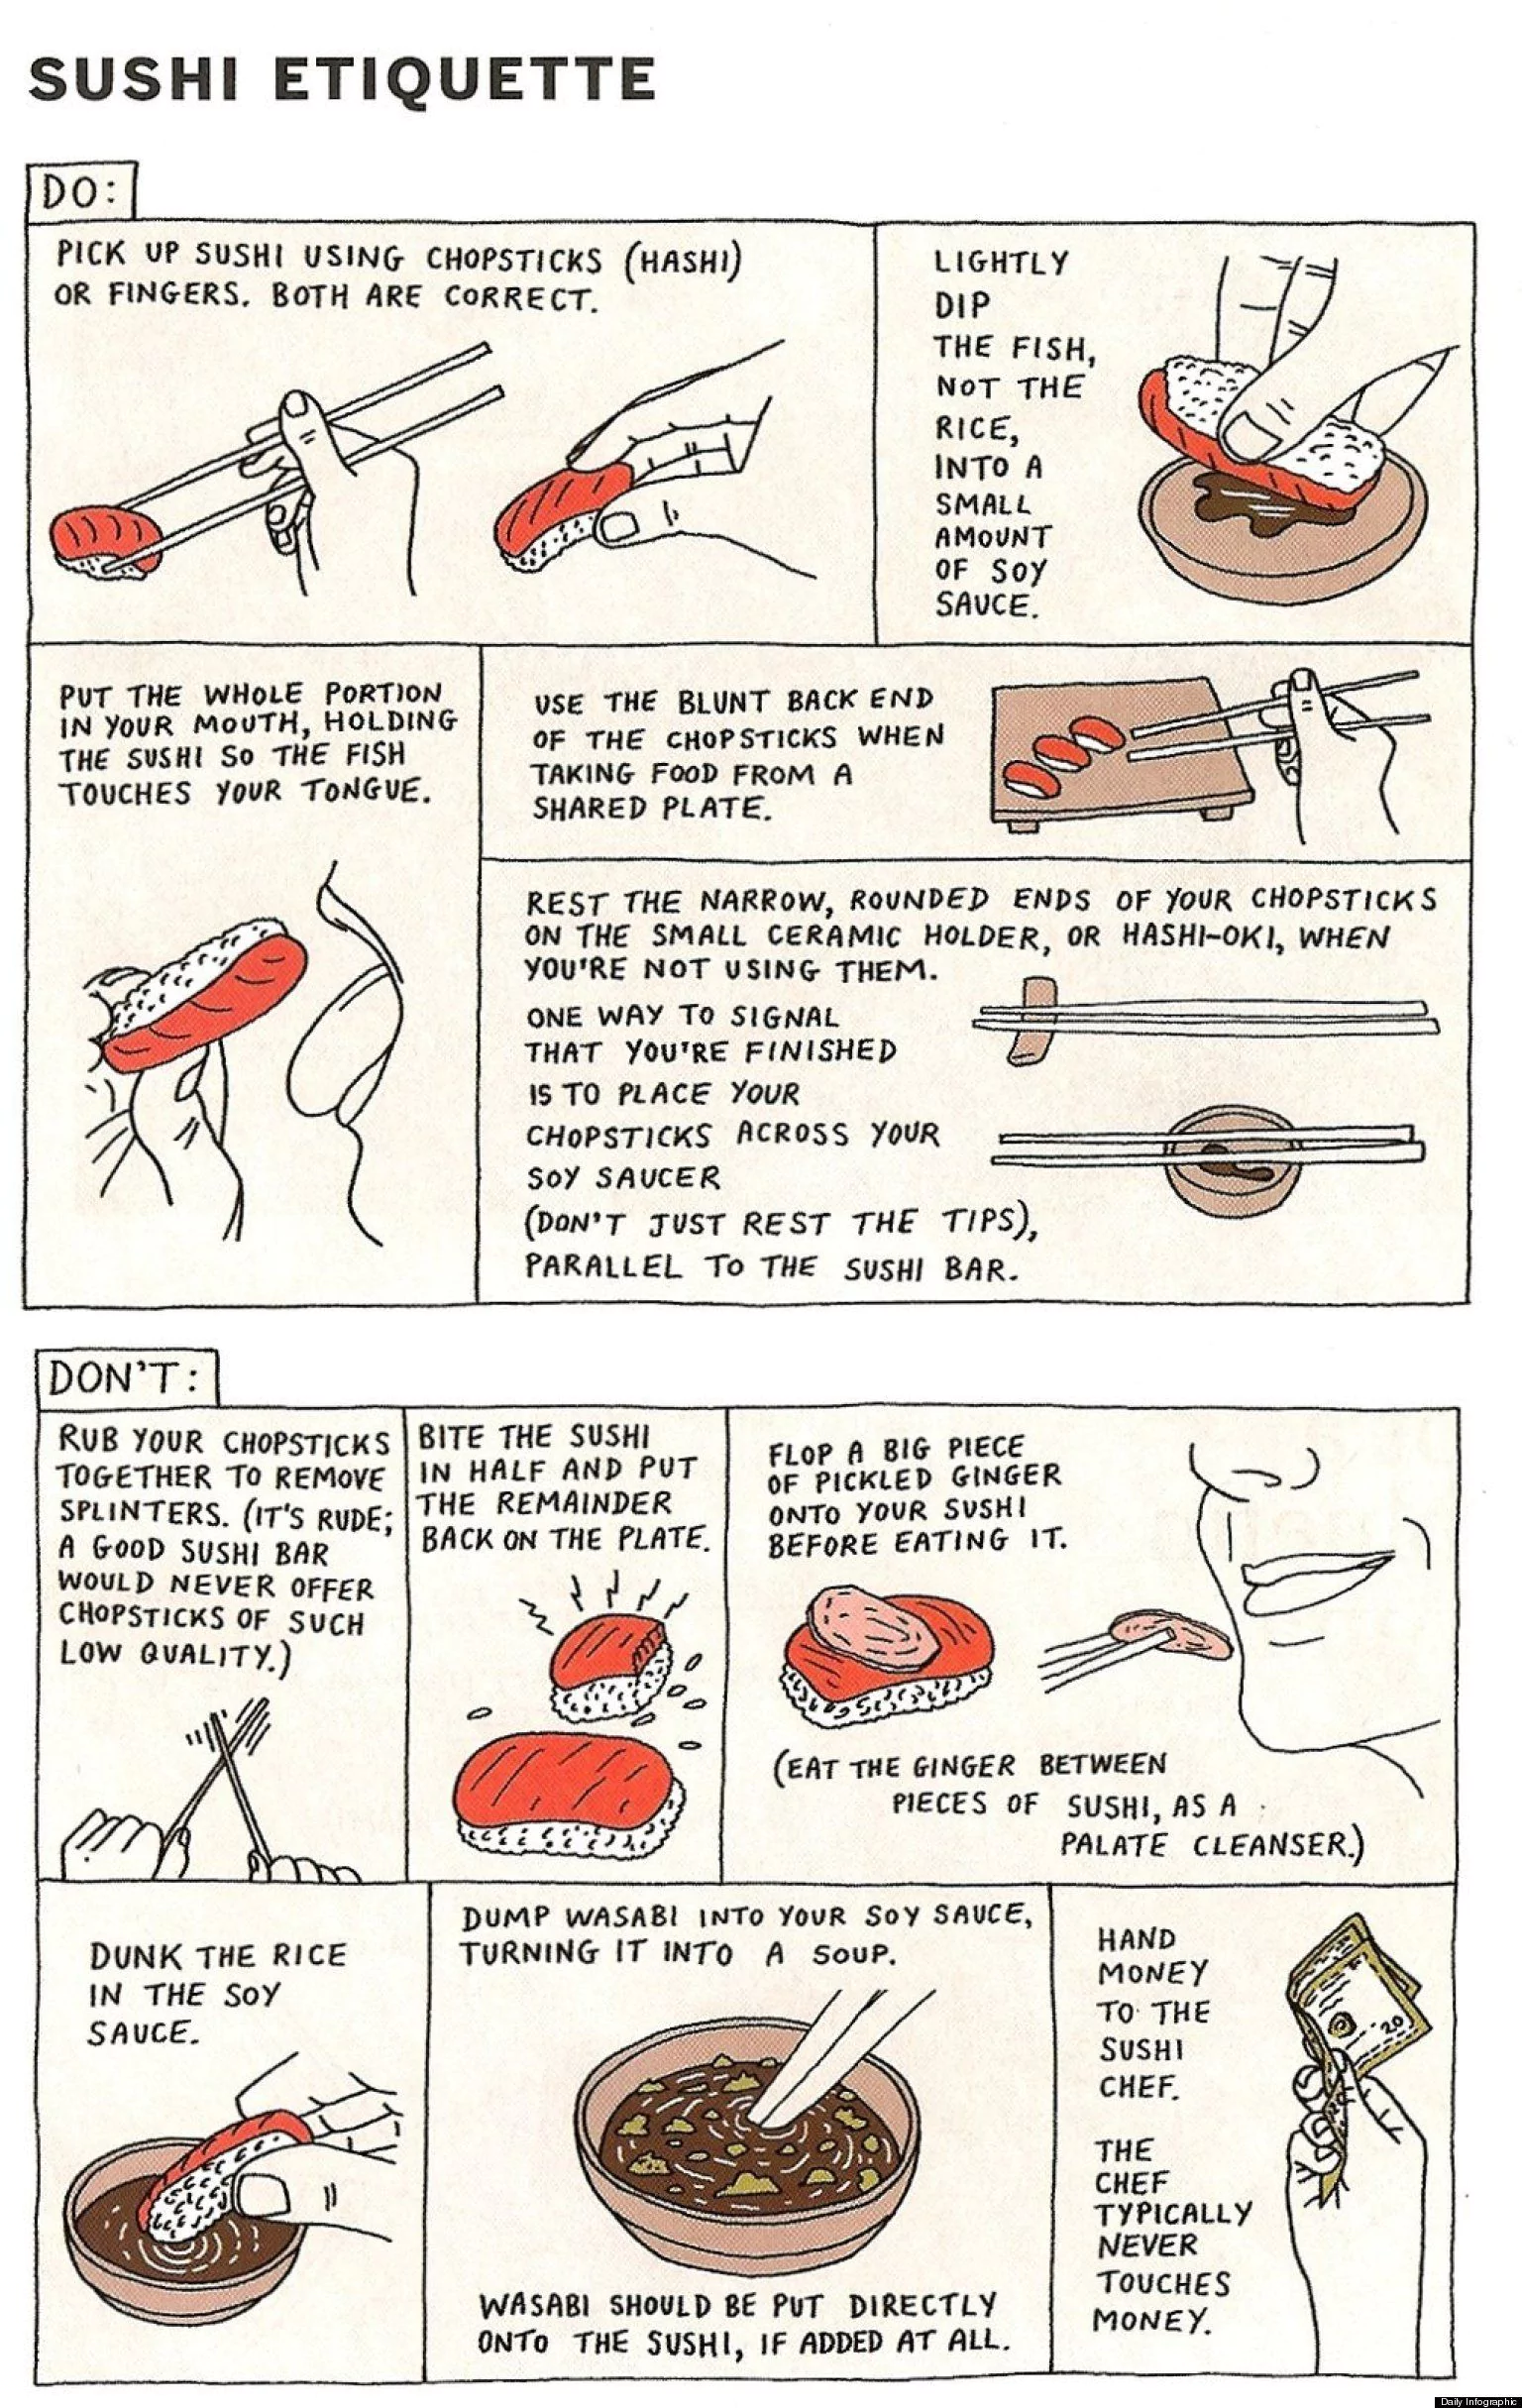 Sushi Etiquette